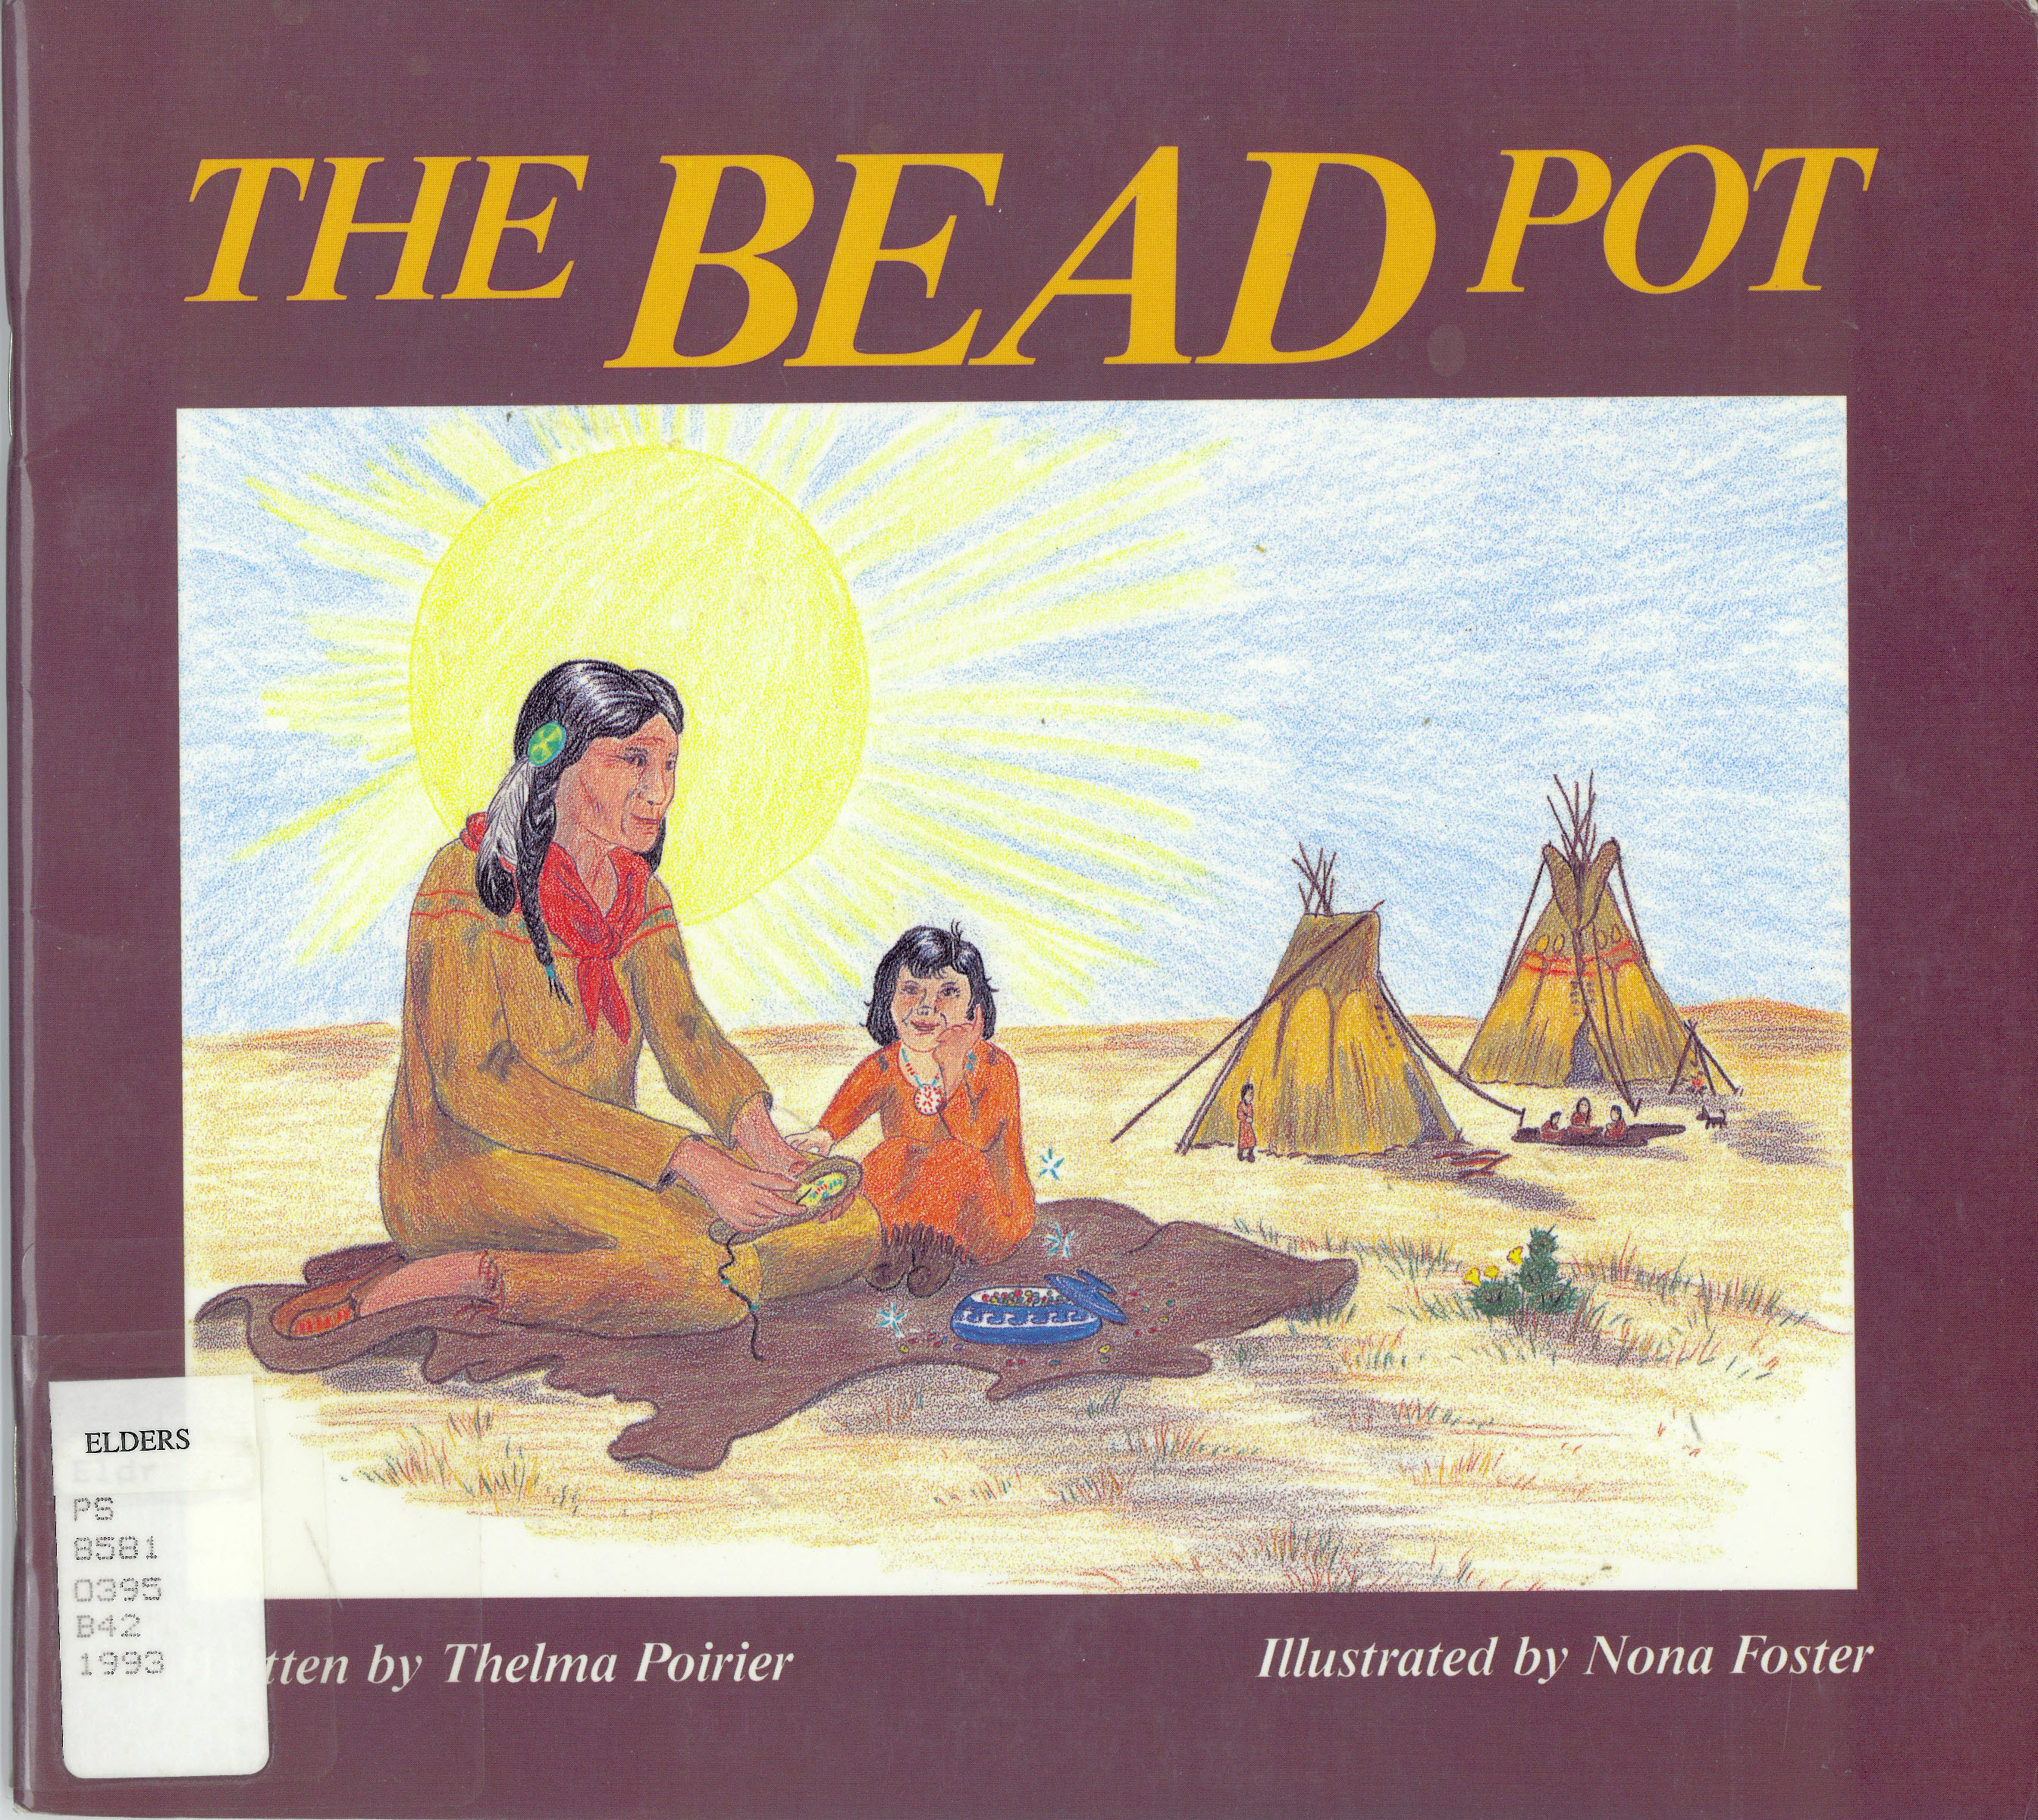 The bead pot